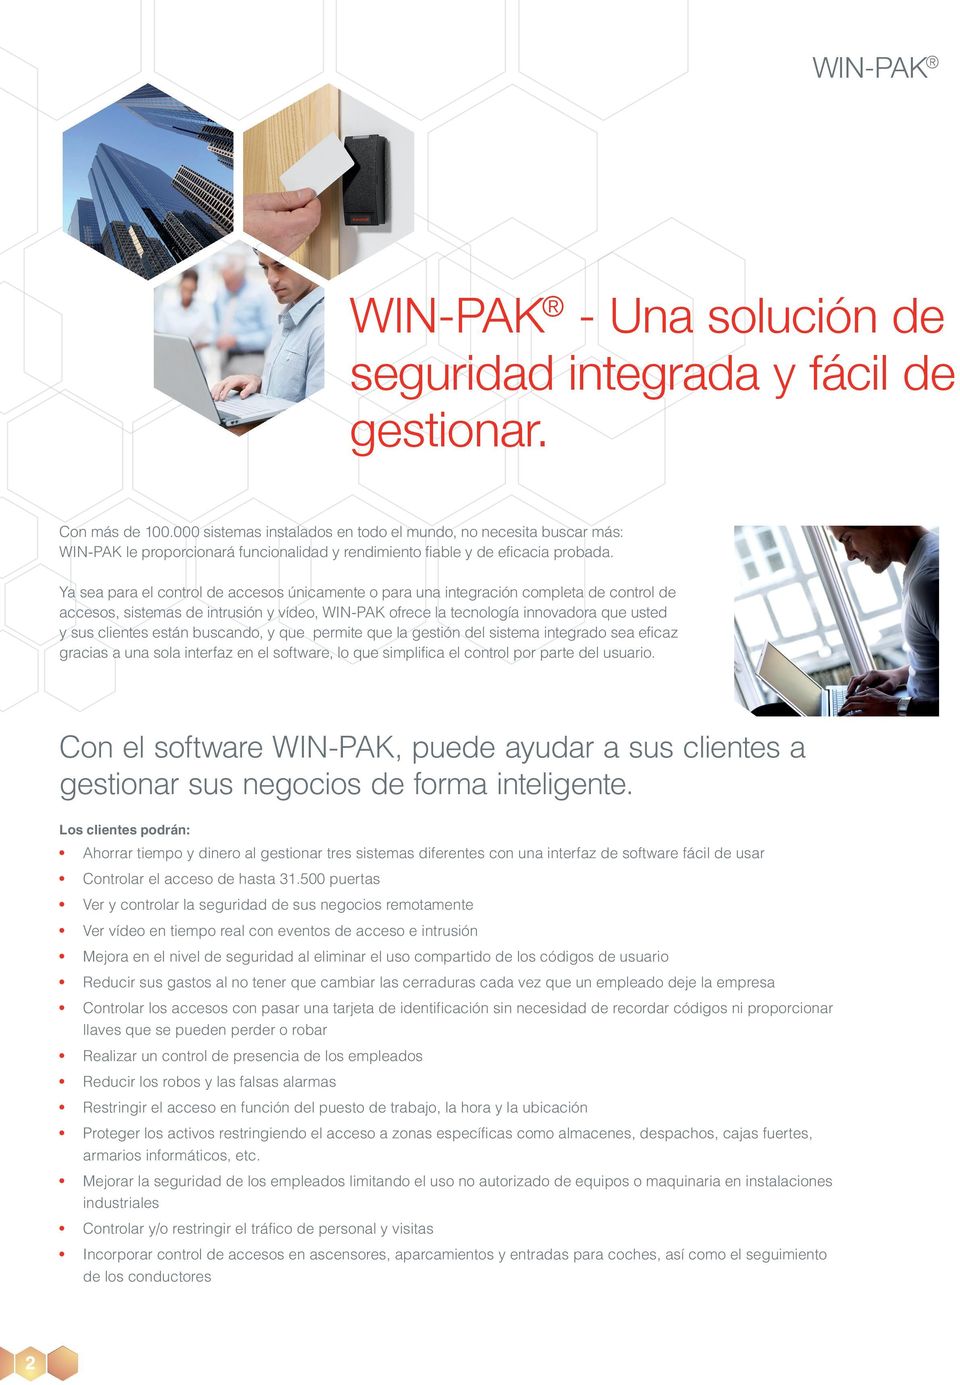 Ya sea para el control de accesos únicamente o para una integración completa de control de accesos, sistemas de intrusión y vídeo, WIN-PAK ofrece la tecnología innovadora que usted y sus clientes